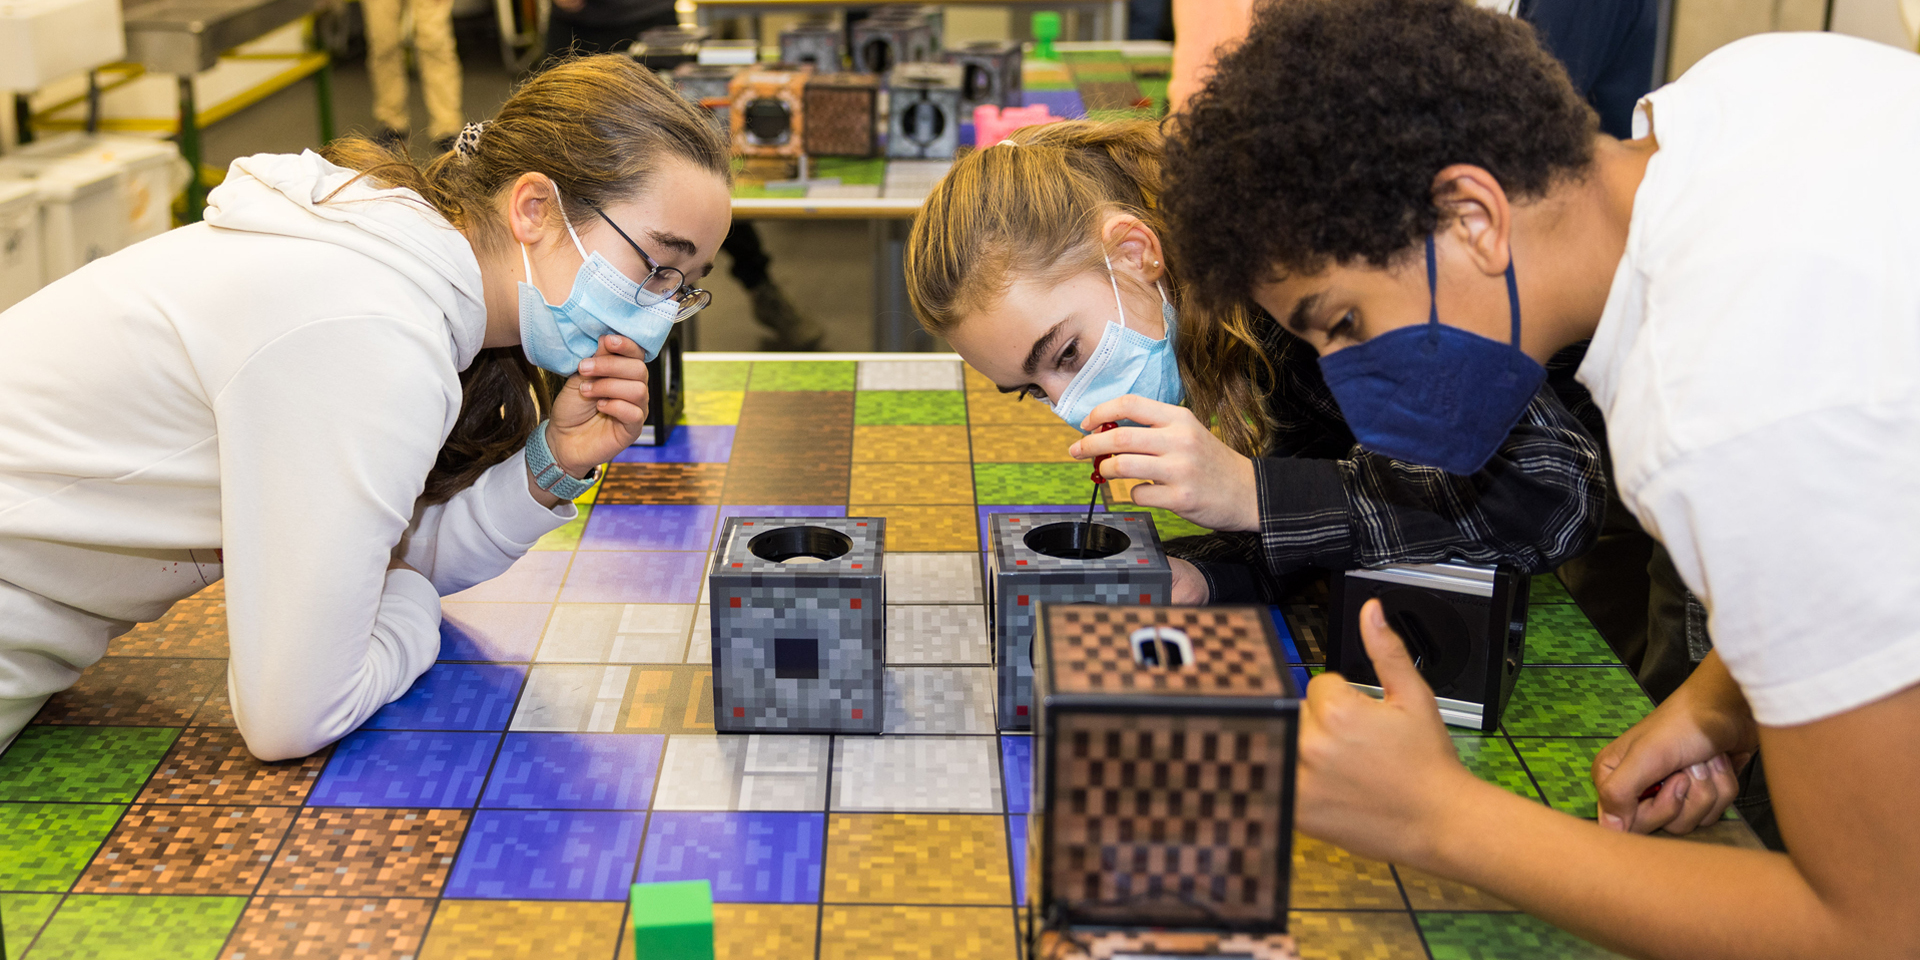 Jugendliche spielen mit Minecraft-Würfeln am Tisch